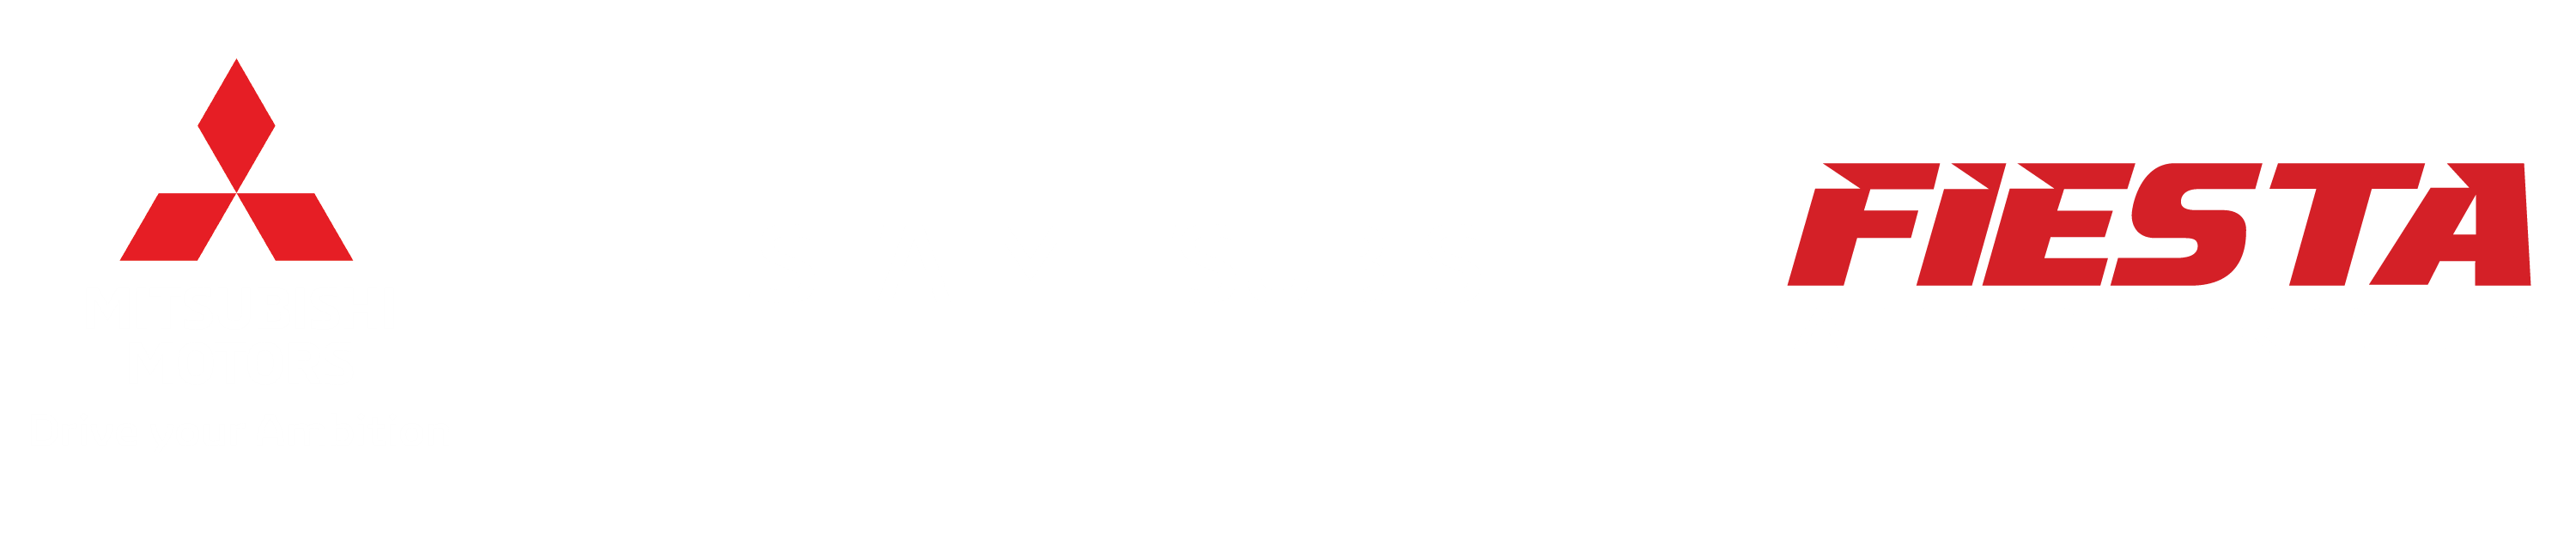 Fiesta Mitsubishi